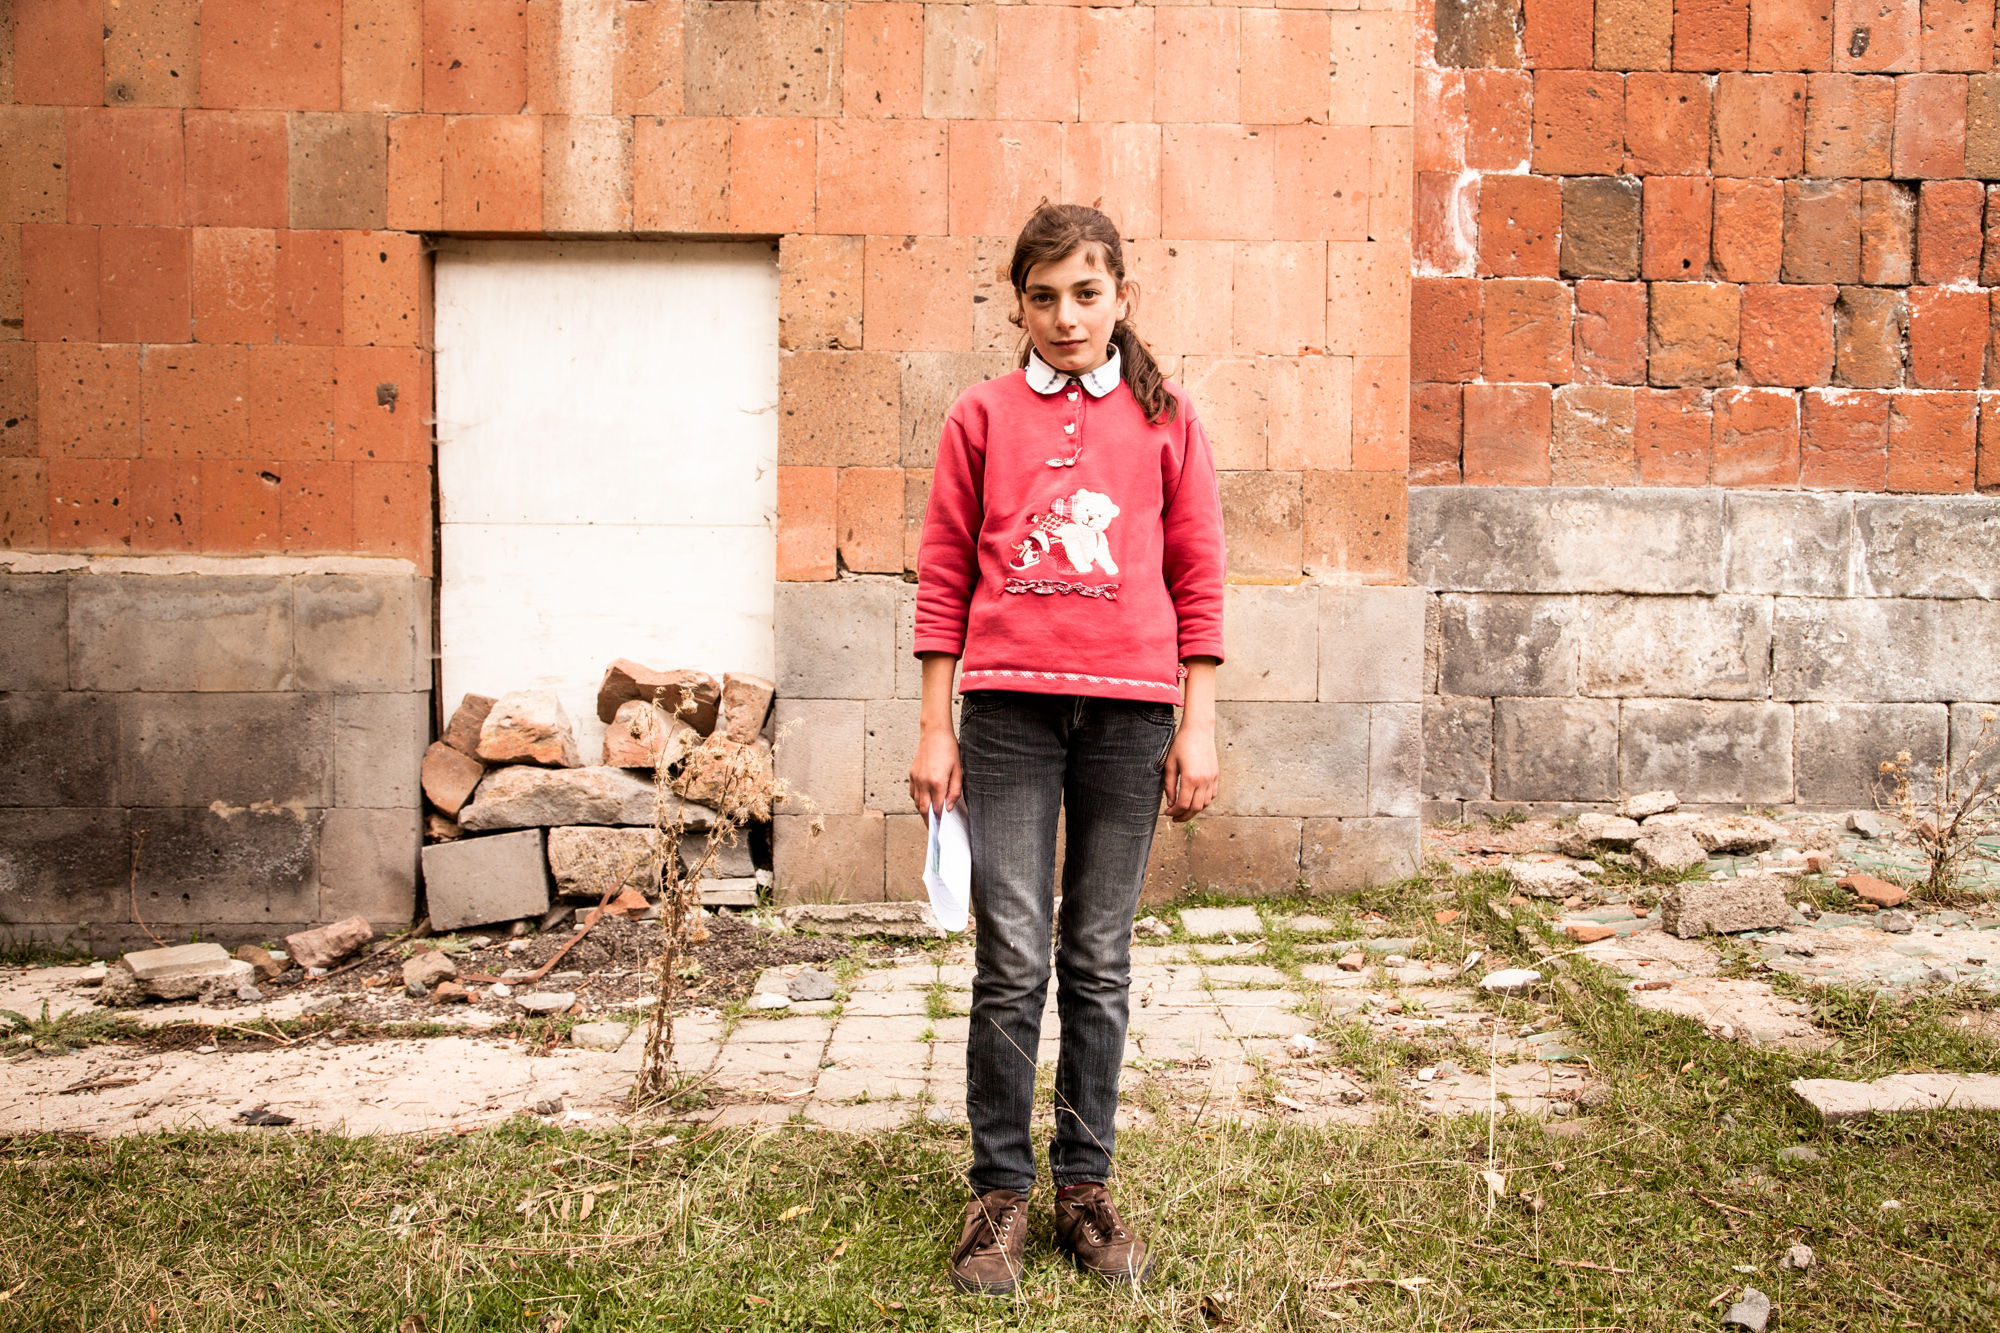  Nazéli a 12 ans et rentre de l'école. En classe de 12ème, à 15 ans, elle suivra comme tous un cours d'instruction militaire, où garçons et filles apprendront notamment à se servir d'une Kalachnikov. Pour l'instant, elle a ses devoirs à faire. À l'is